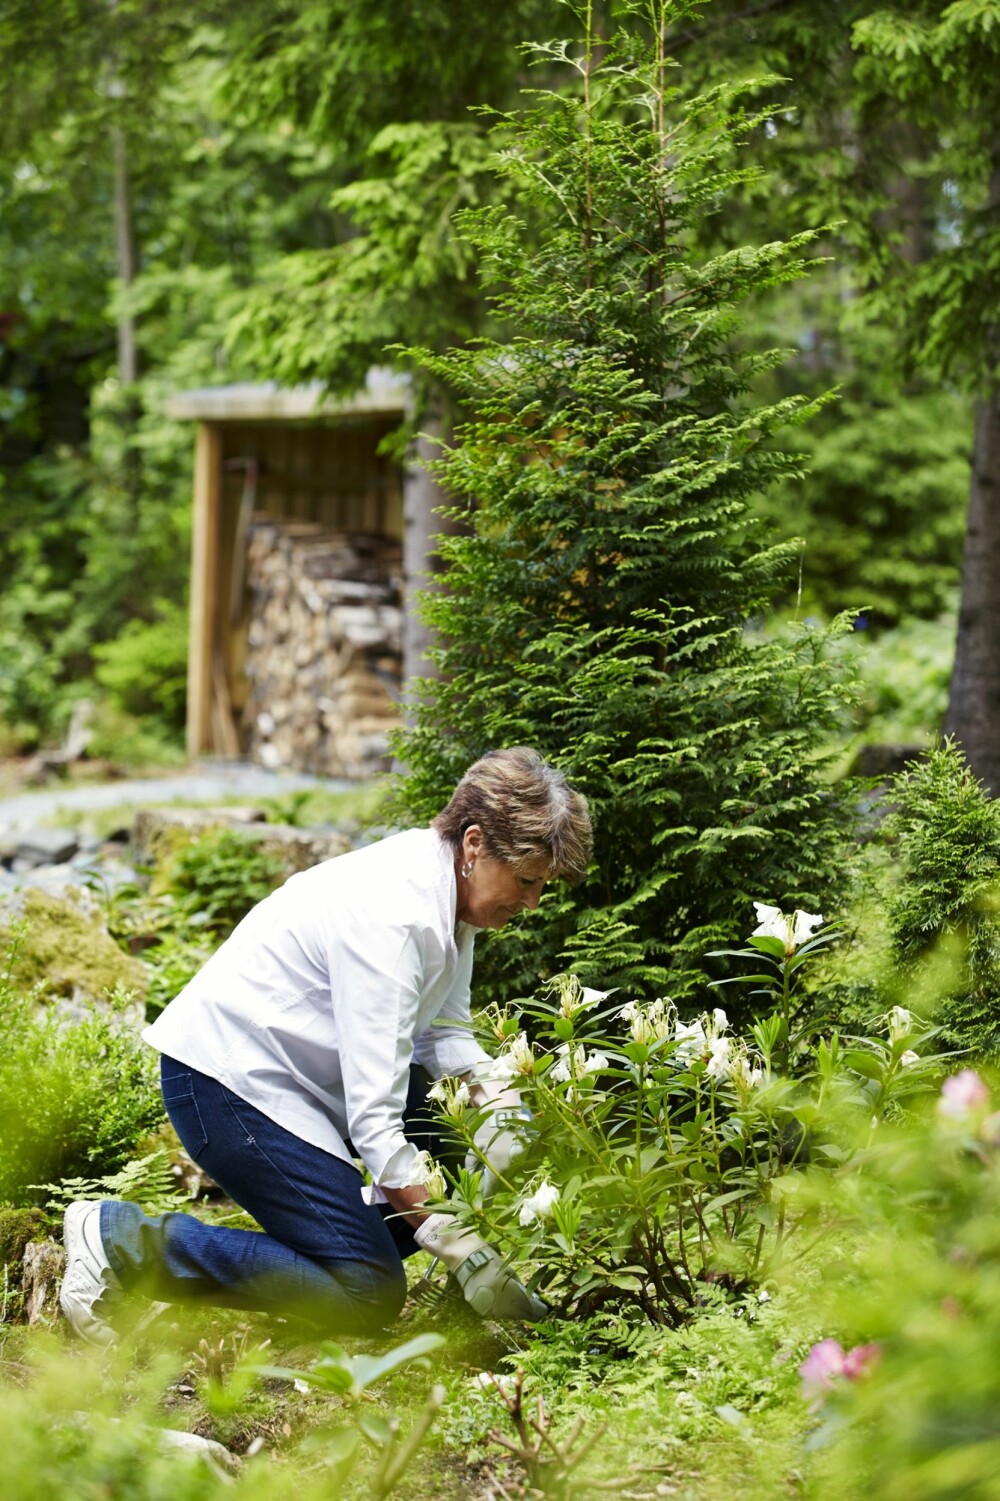 På knærne etter hyttehagen: Wenche har brukt mye tid på hagen ved
Iddefjorden. En velholdt, kreativ hage som bærer preg av naturen
rundt. Her steller hun en rododendron